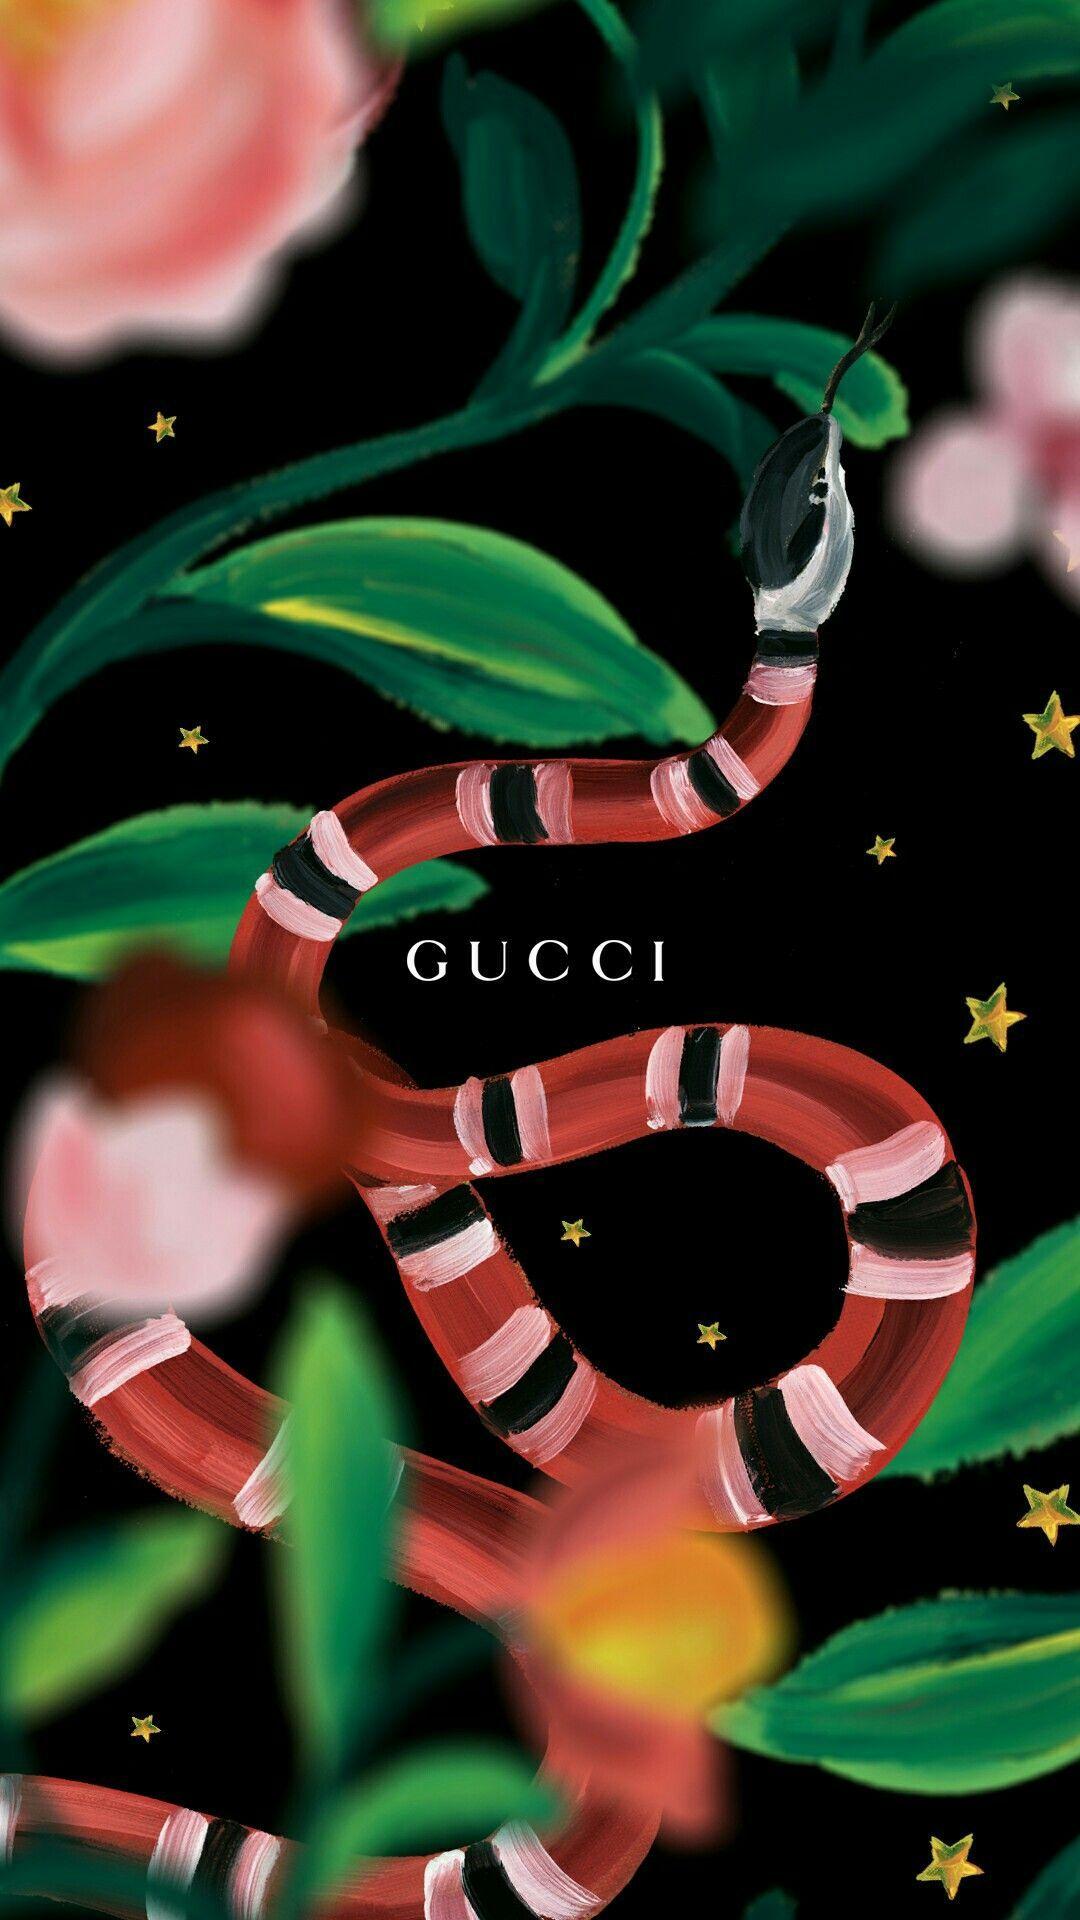 ʟɪʟɢʟᴏɢɪʀʟ. Randoms. Wallpaper, Gucci and Phone